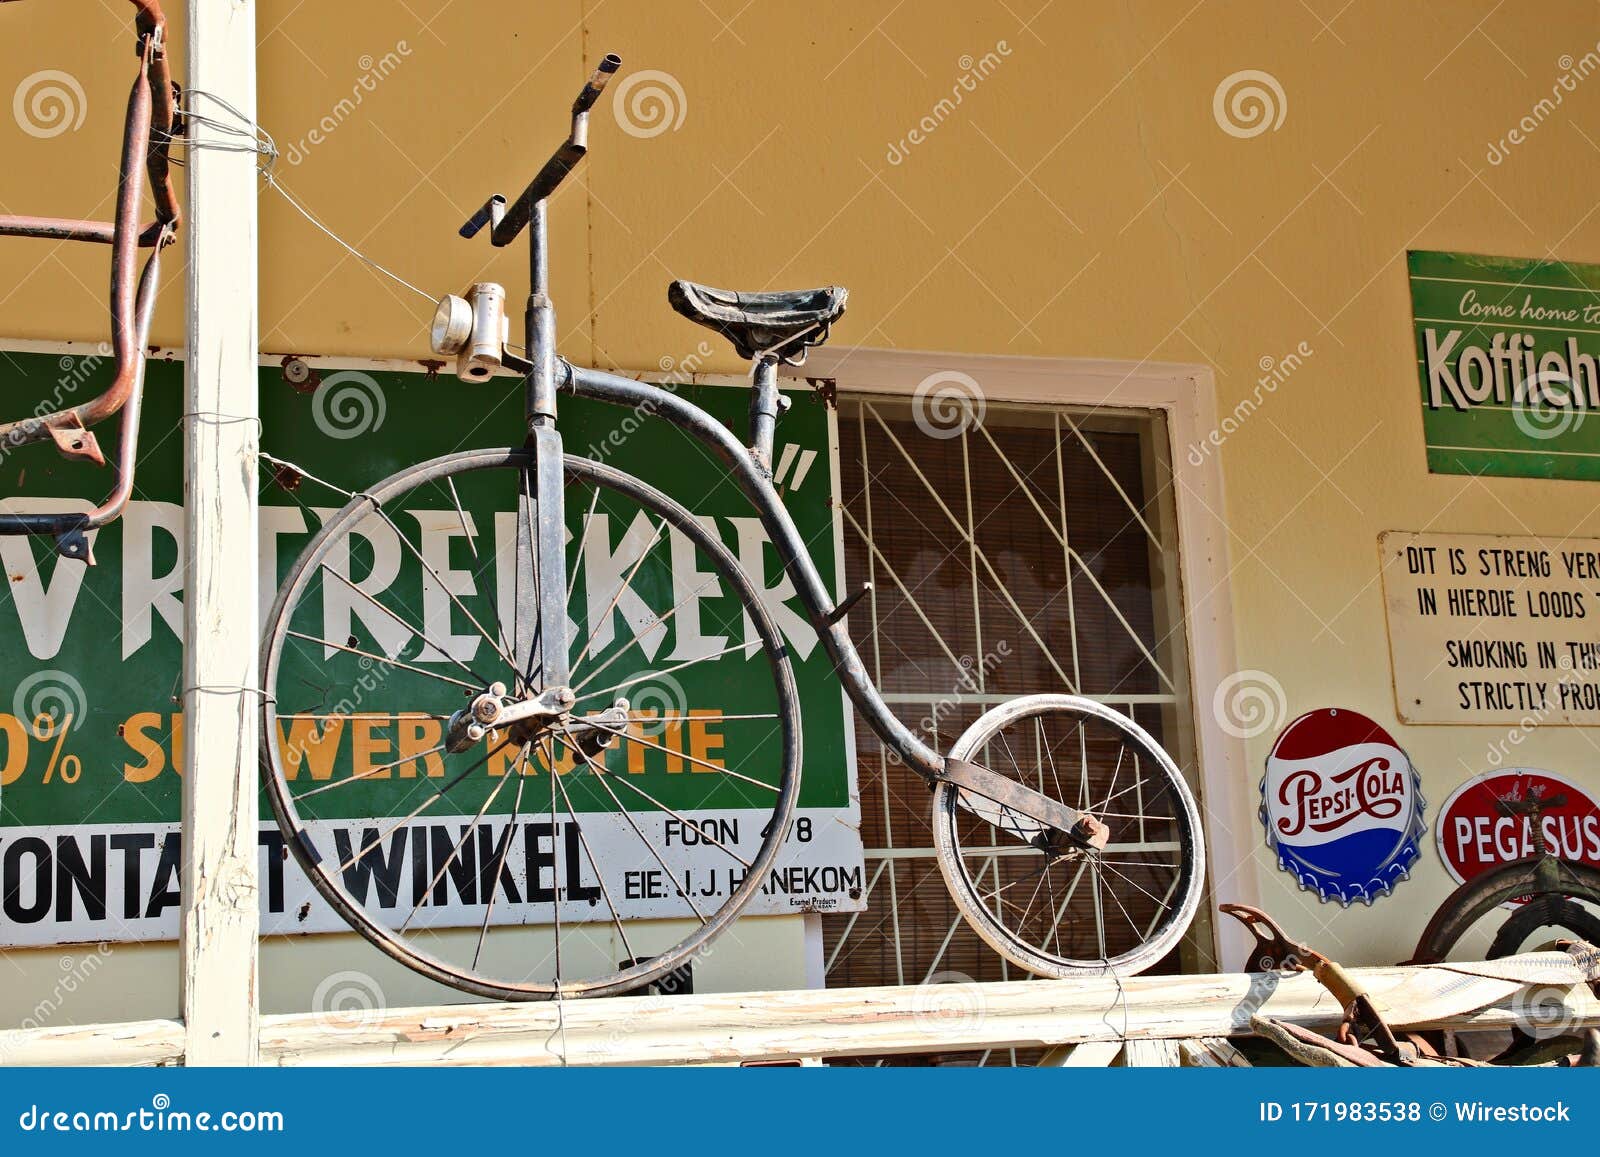 vintage bicycle store